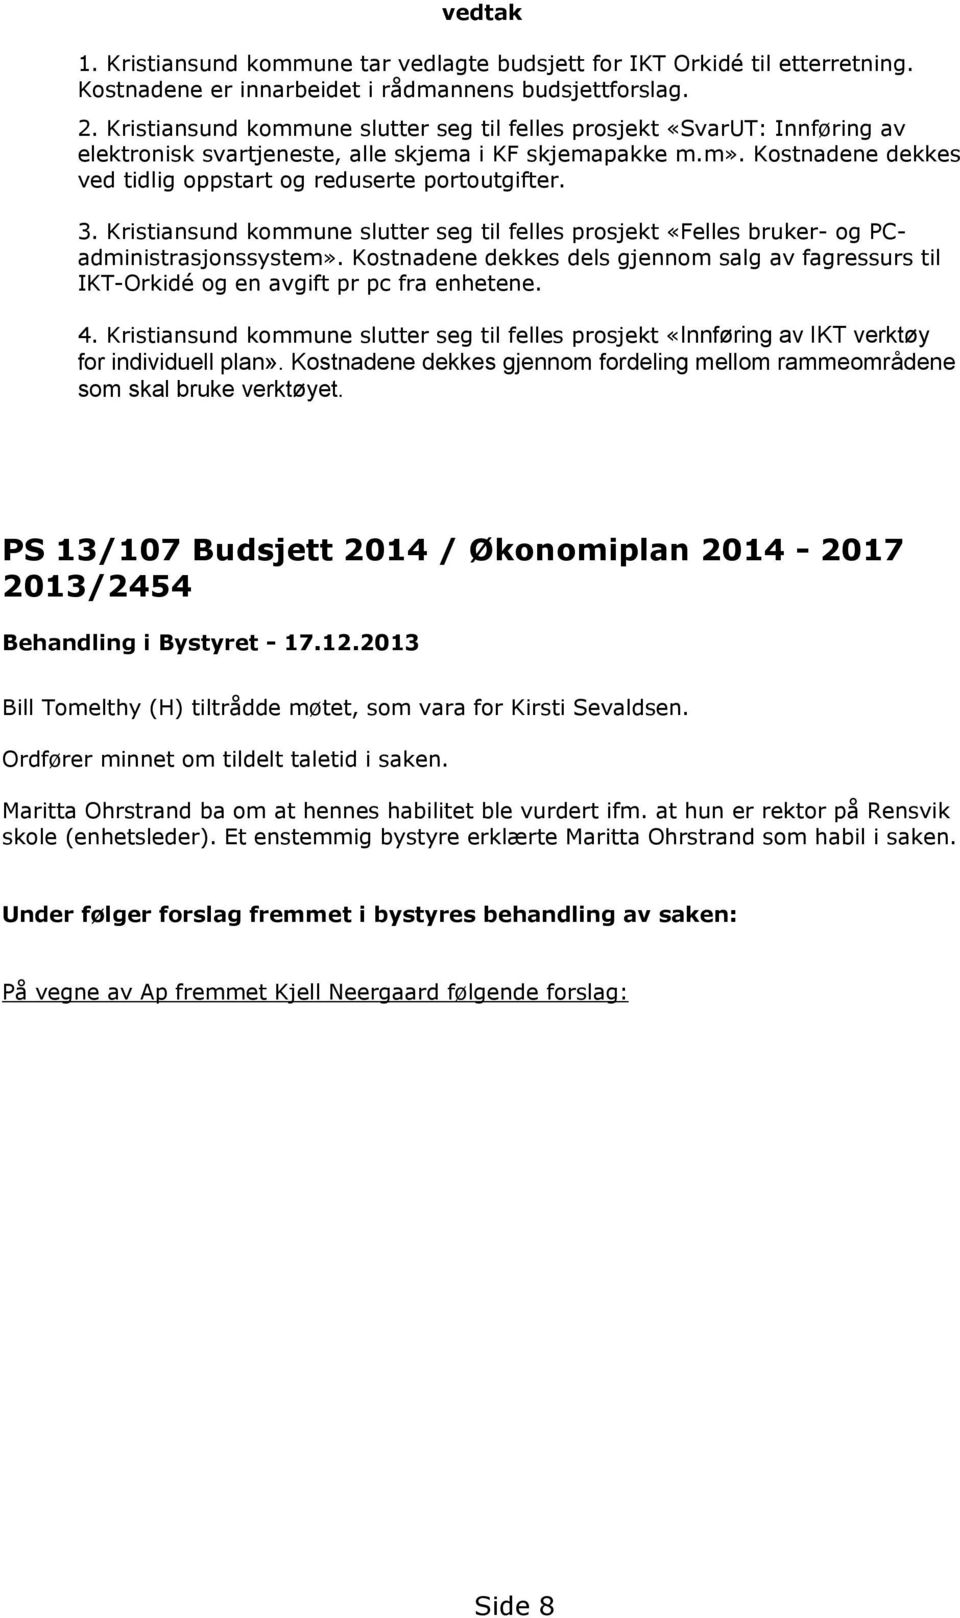 Kostnadene dekkes ved tidlig oppstart og reduserte portoutgifter. 3. Kristiansund kommune slutter seg til felles prosjekt «Felles bruker- og PCadministrasjonssystem».